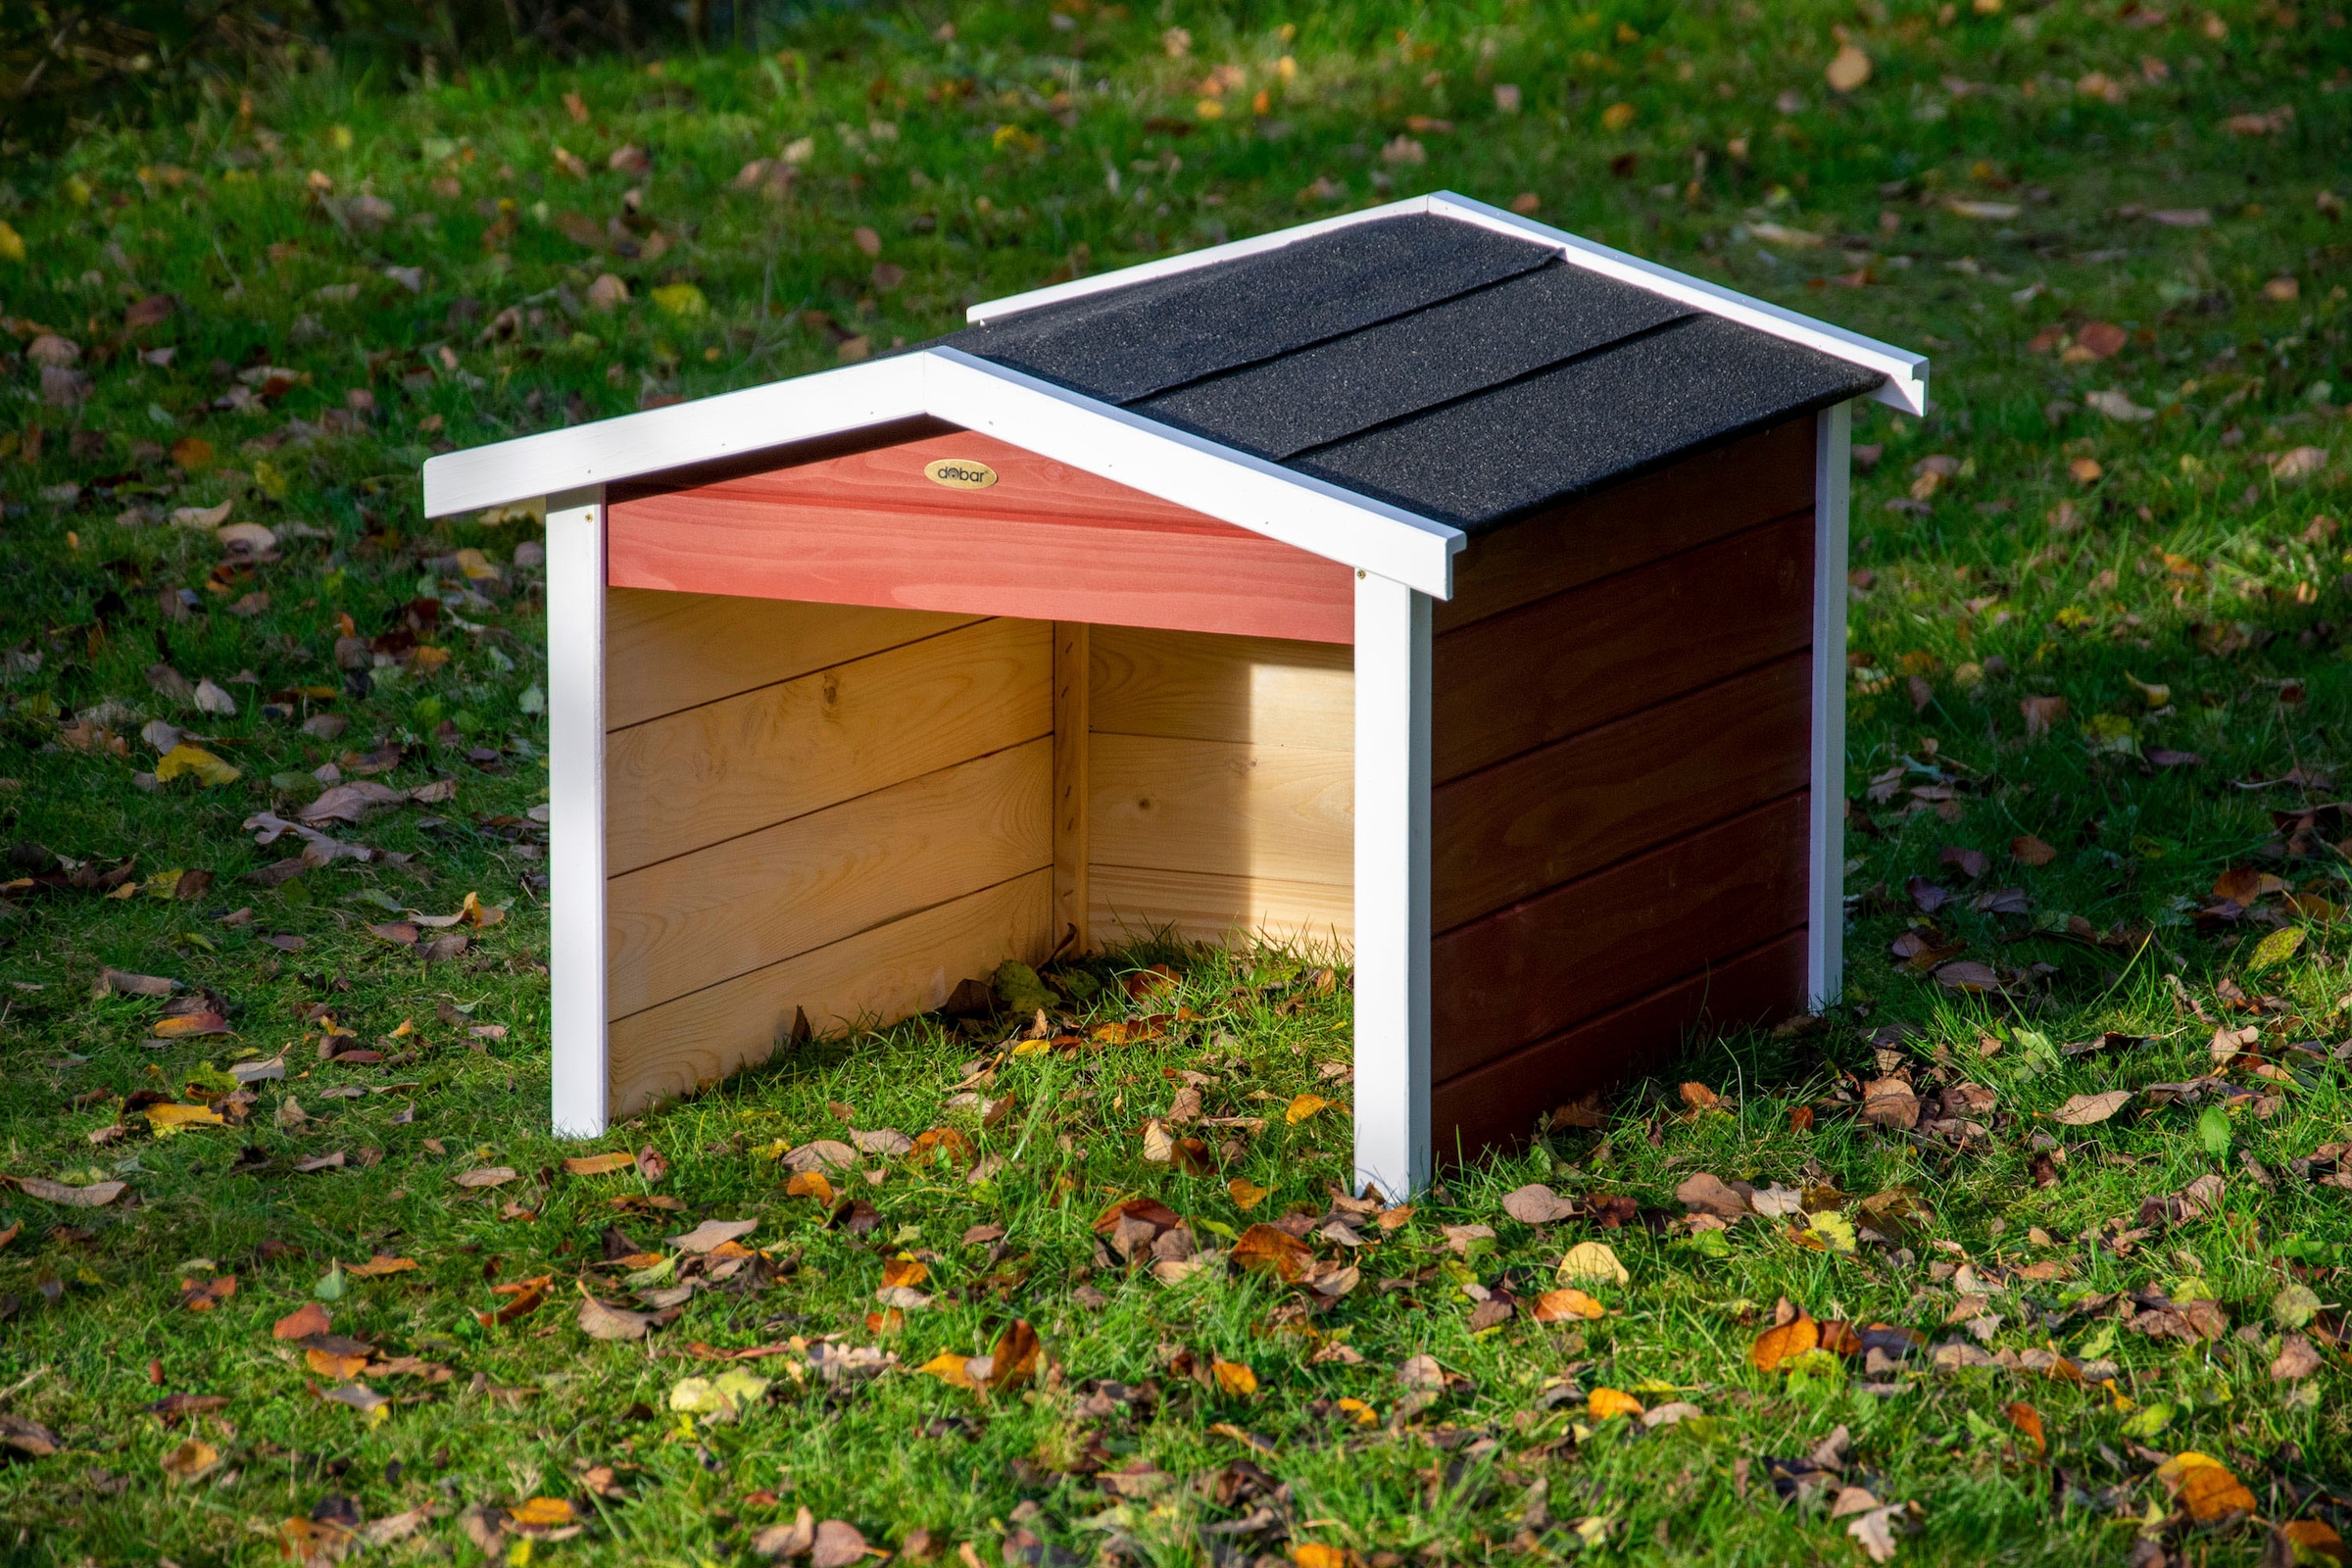 dobar Mähroboter-Garage, aus Holz in rot, mit Bitumen-Dach